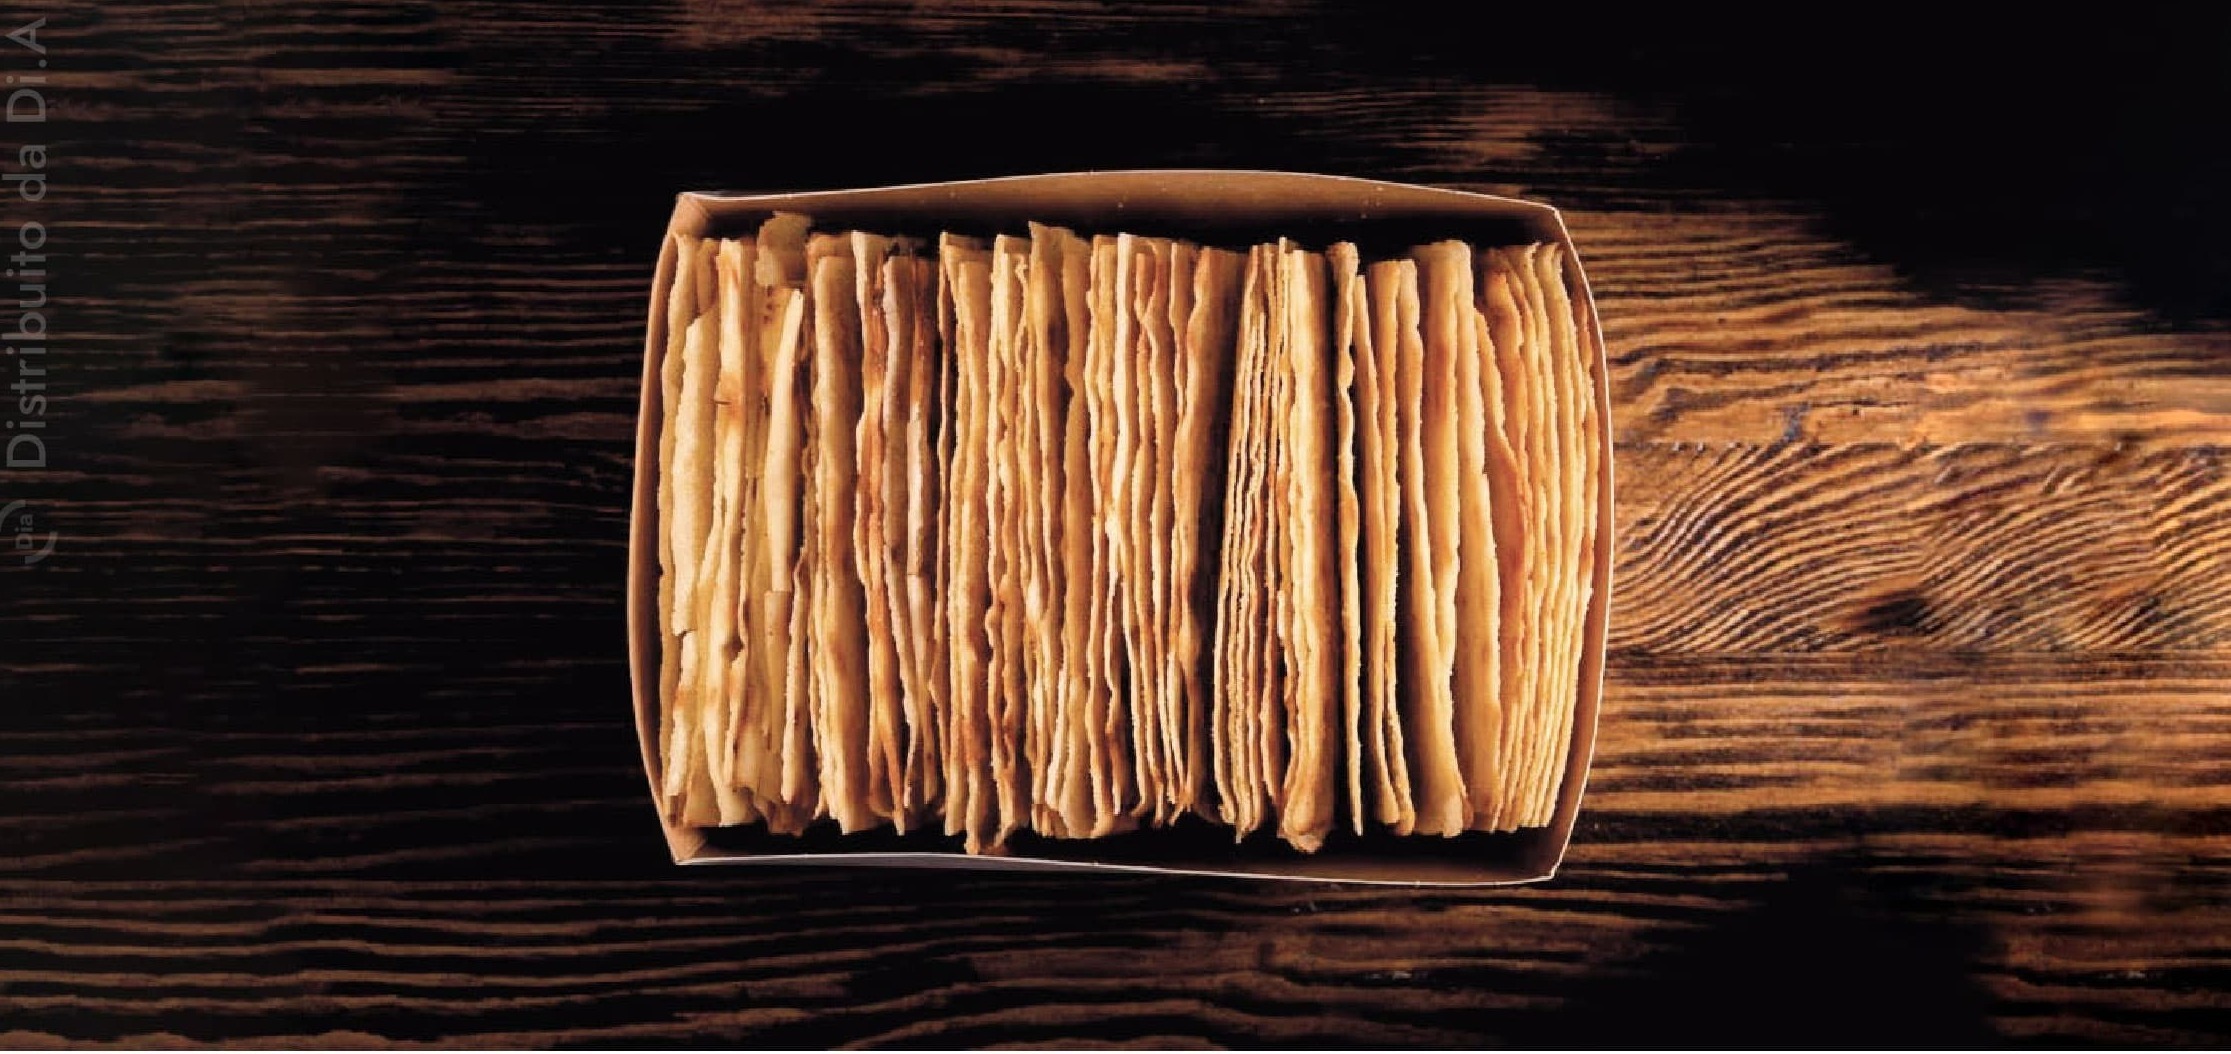 La vaschetta di cartone del pane Guttiau Carapan è ideale per essere messa in forno e ridare la fragranza e la croccantezza al prodotto come appena sfornato.